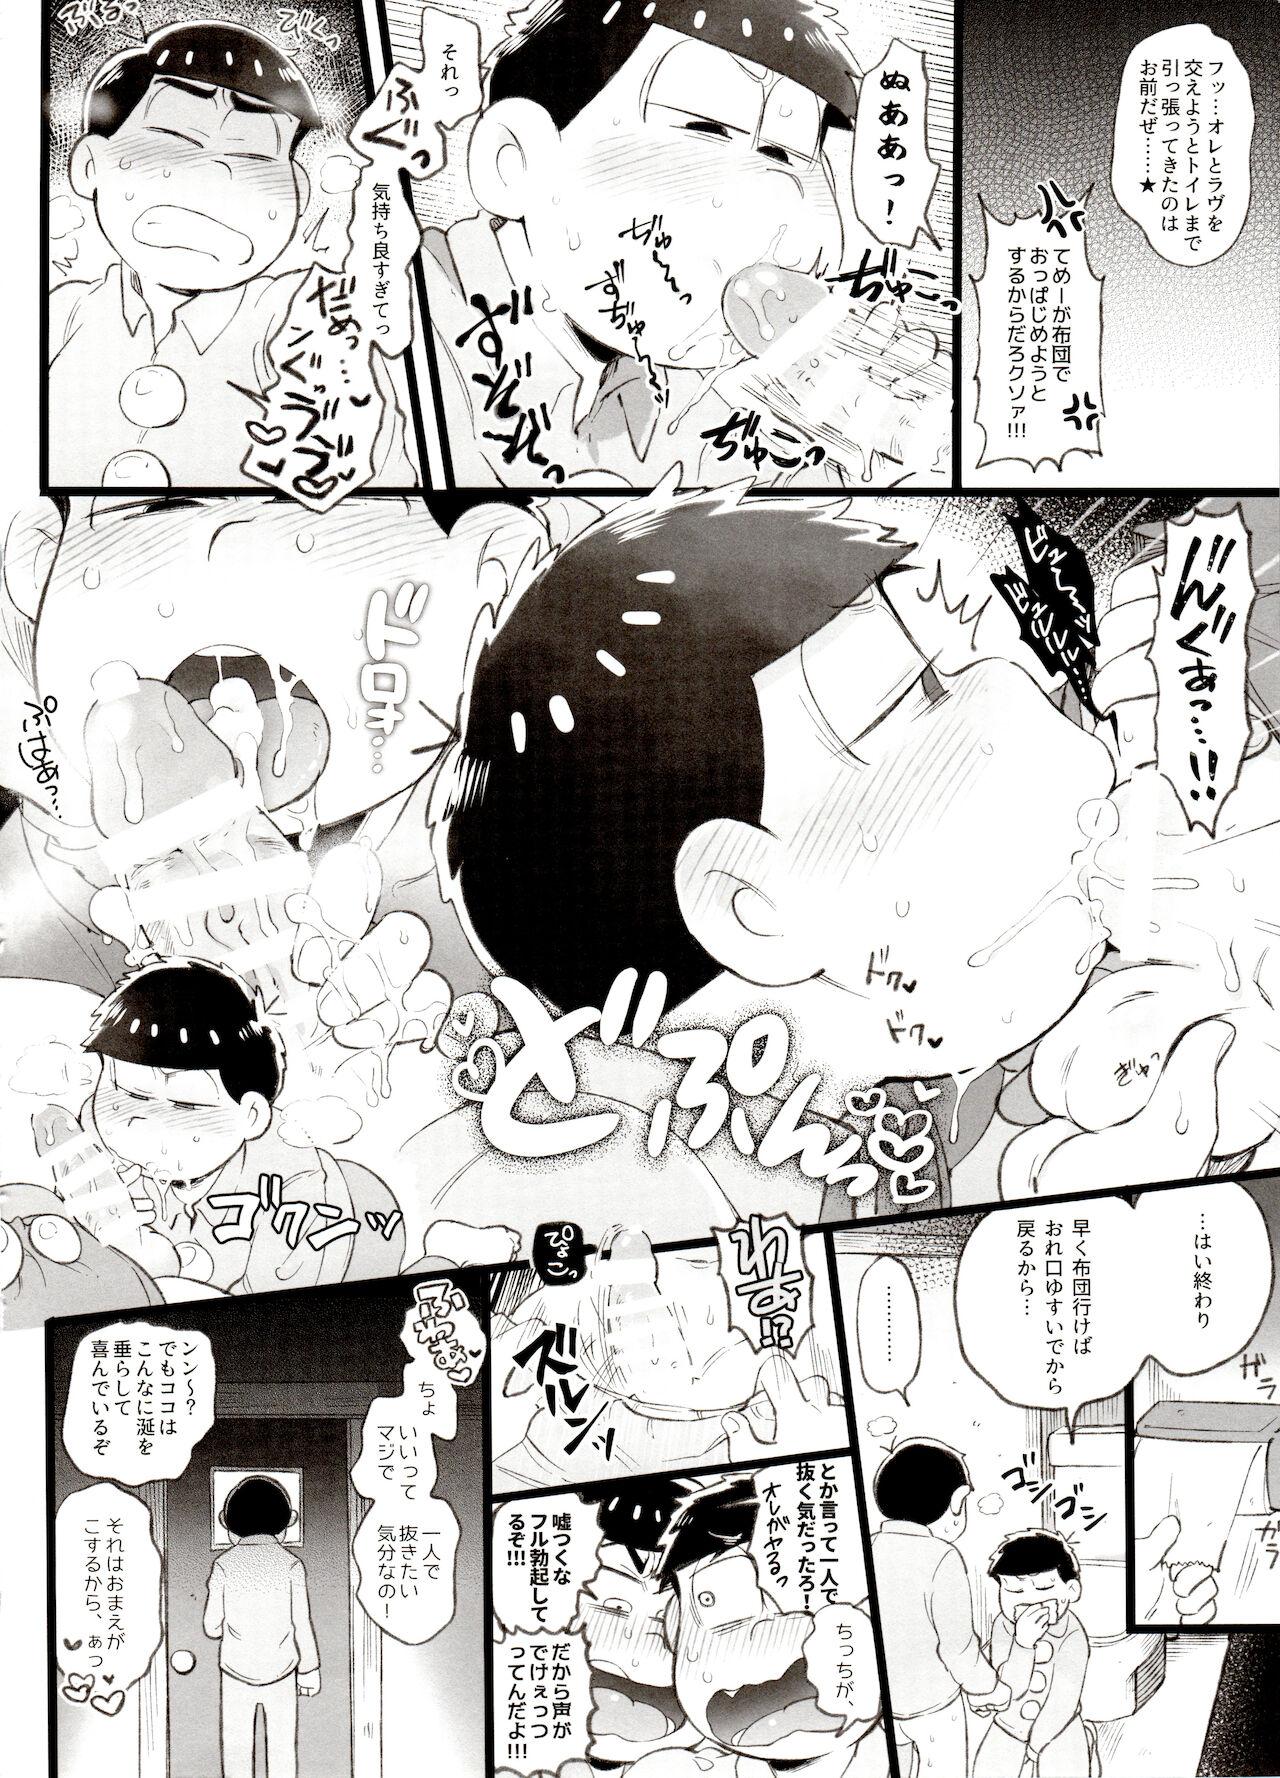 Kahou 10-ji Yon no Omake Hon + Andante no Koufukuron Gojitsu Manga 3